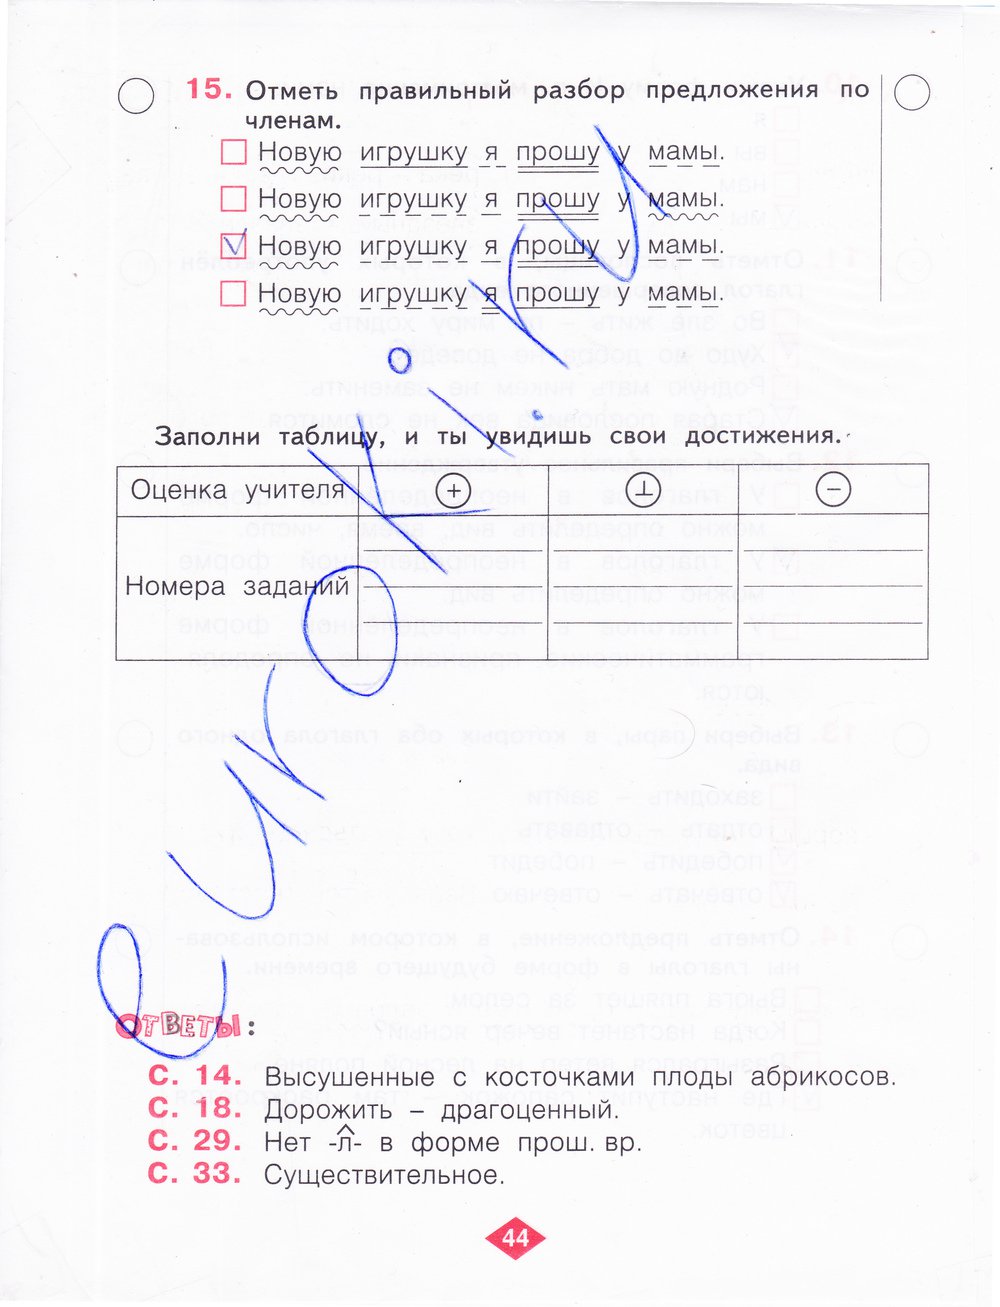 гдз 4 класс рабочая тетрадь часть 2 страница 44 русский язык Нечаева, Воскресенская